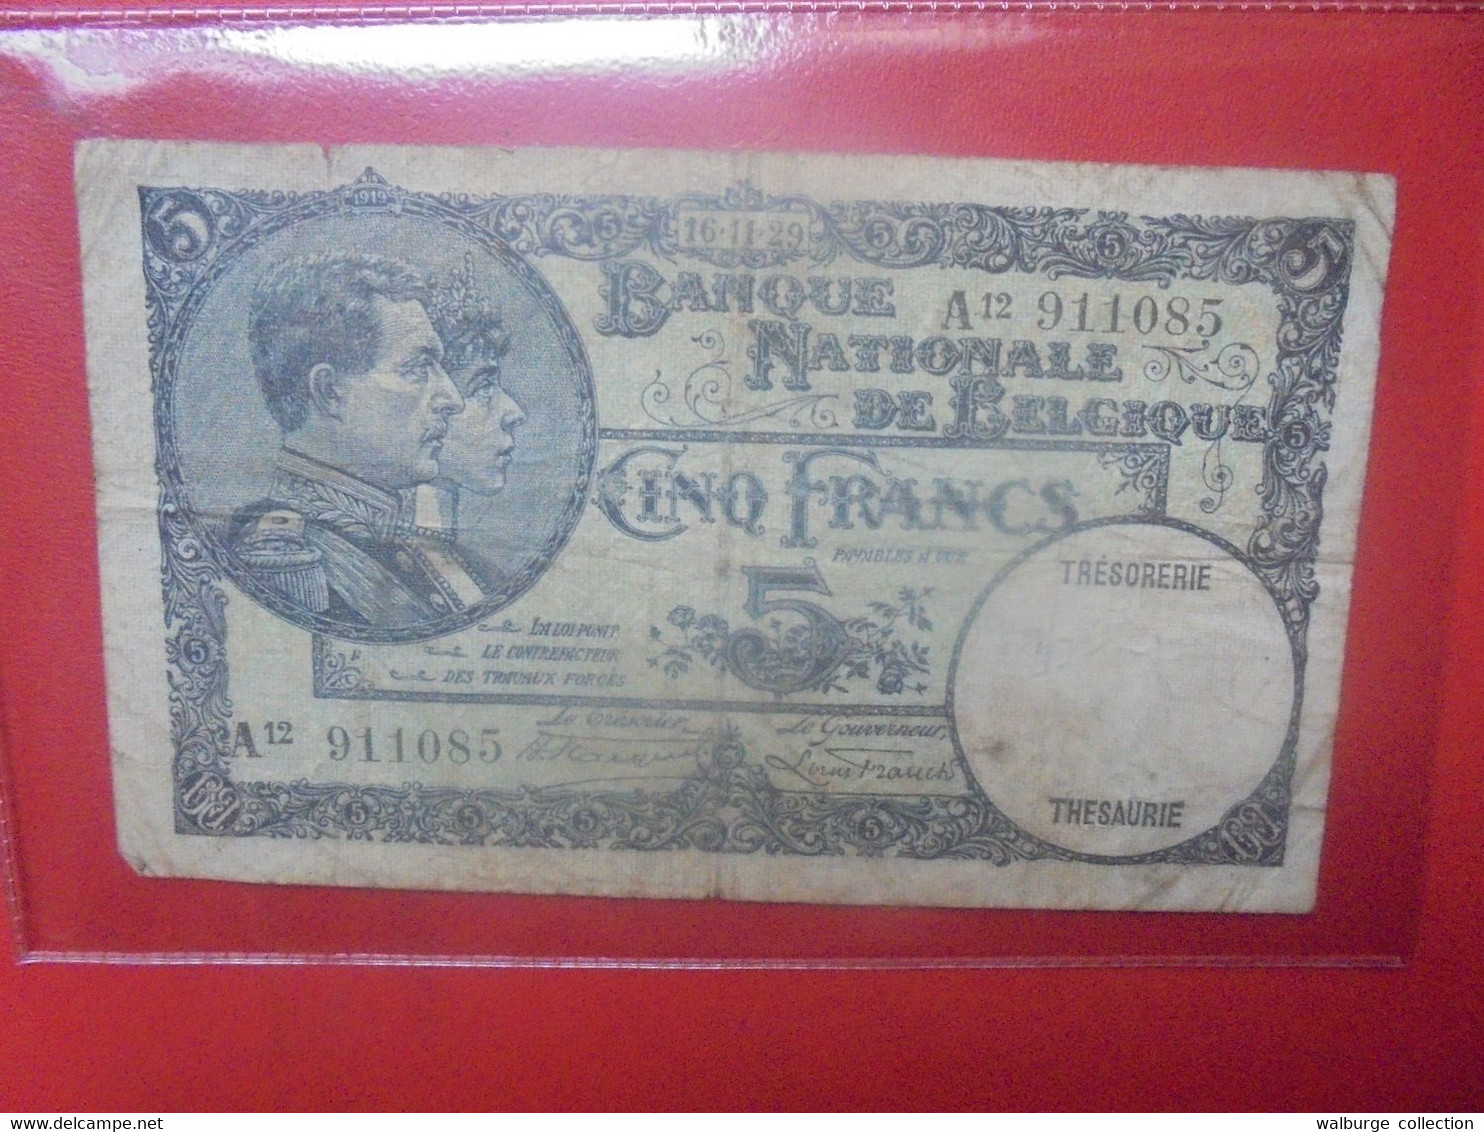 BELGIQUE 5 Francs 1929 Circuler (B.18) - 5 Francos